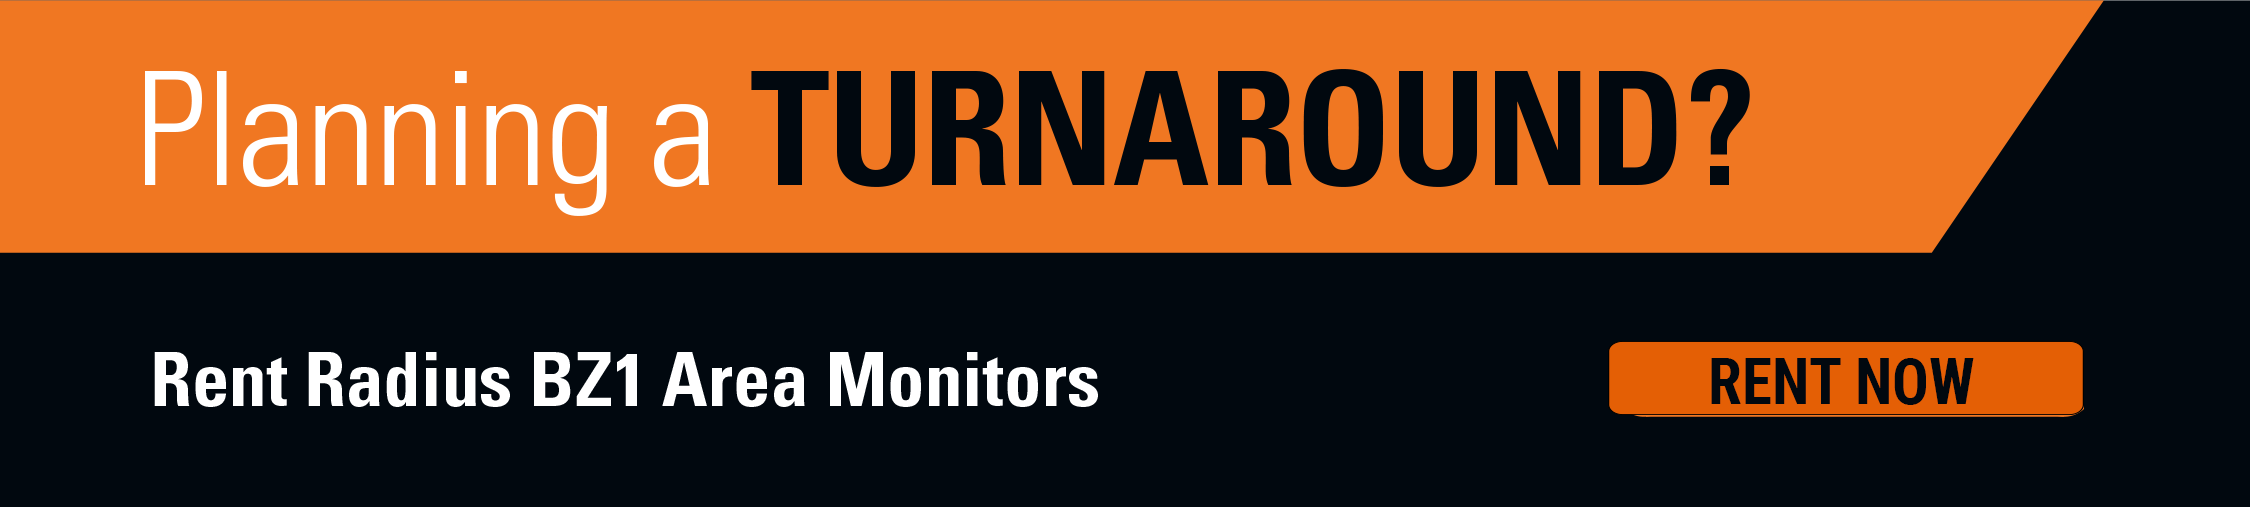 Huur direct Area-Monitors voor uw stops of turnarounds